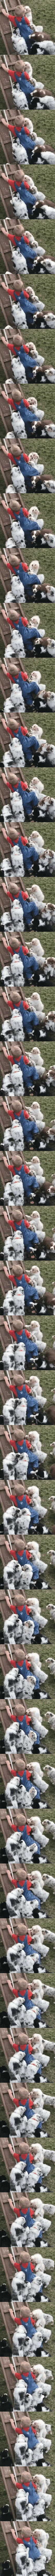 Muchos perros cachorros jugando con un niño.